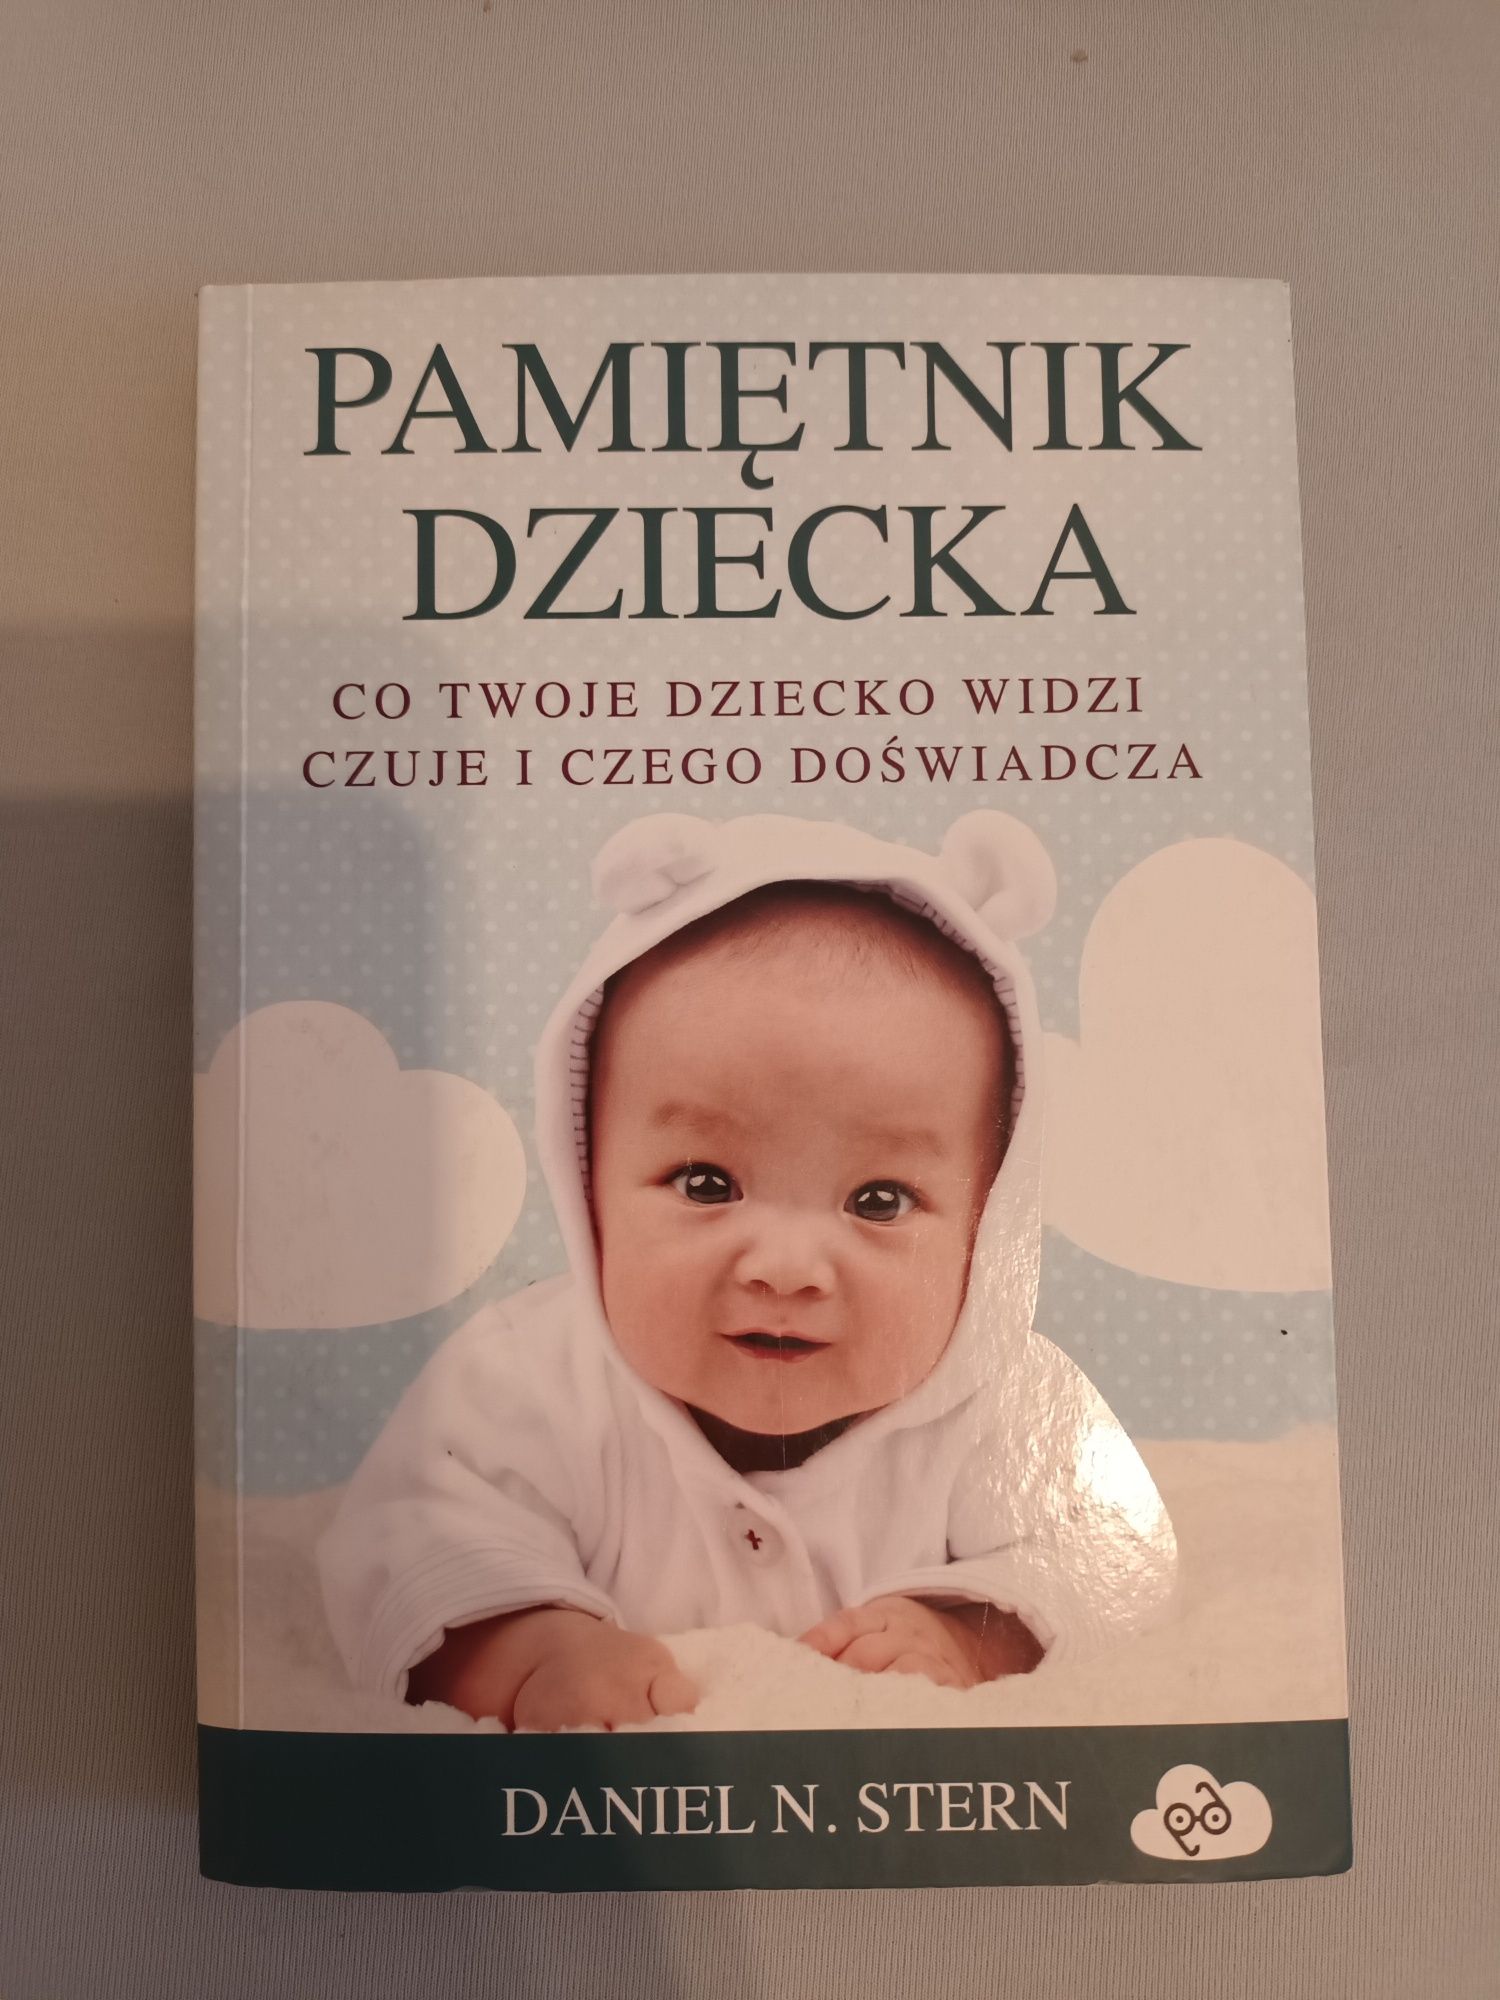 Książka "Pamiętnik dziecka" Daniel N. Stern